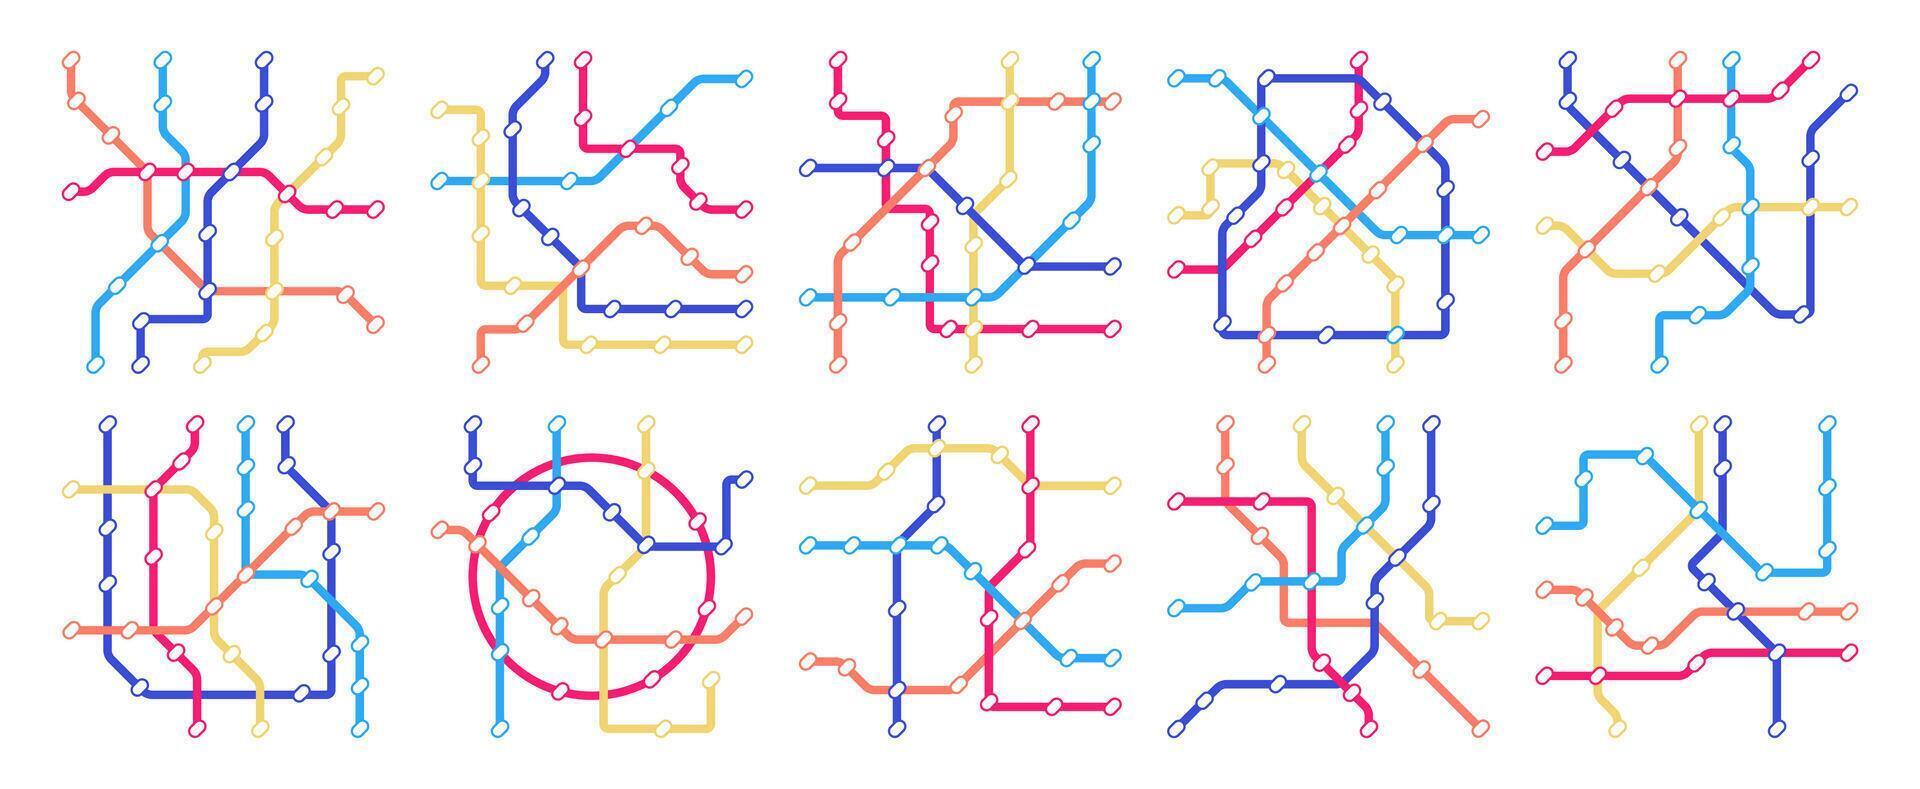 metrô mapa definir. subterrâneo estrada de ferro metro rota conexão e direção, massa transporte público transporte rota e estação. vetor coleção